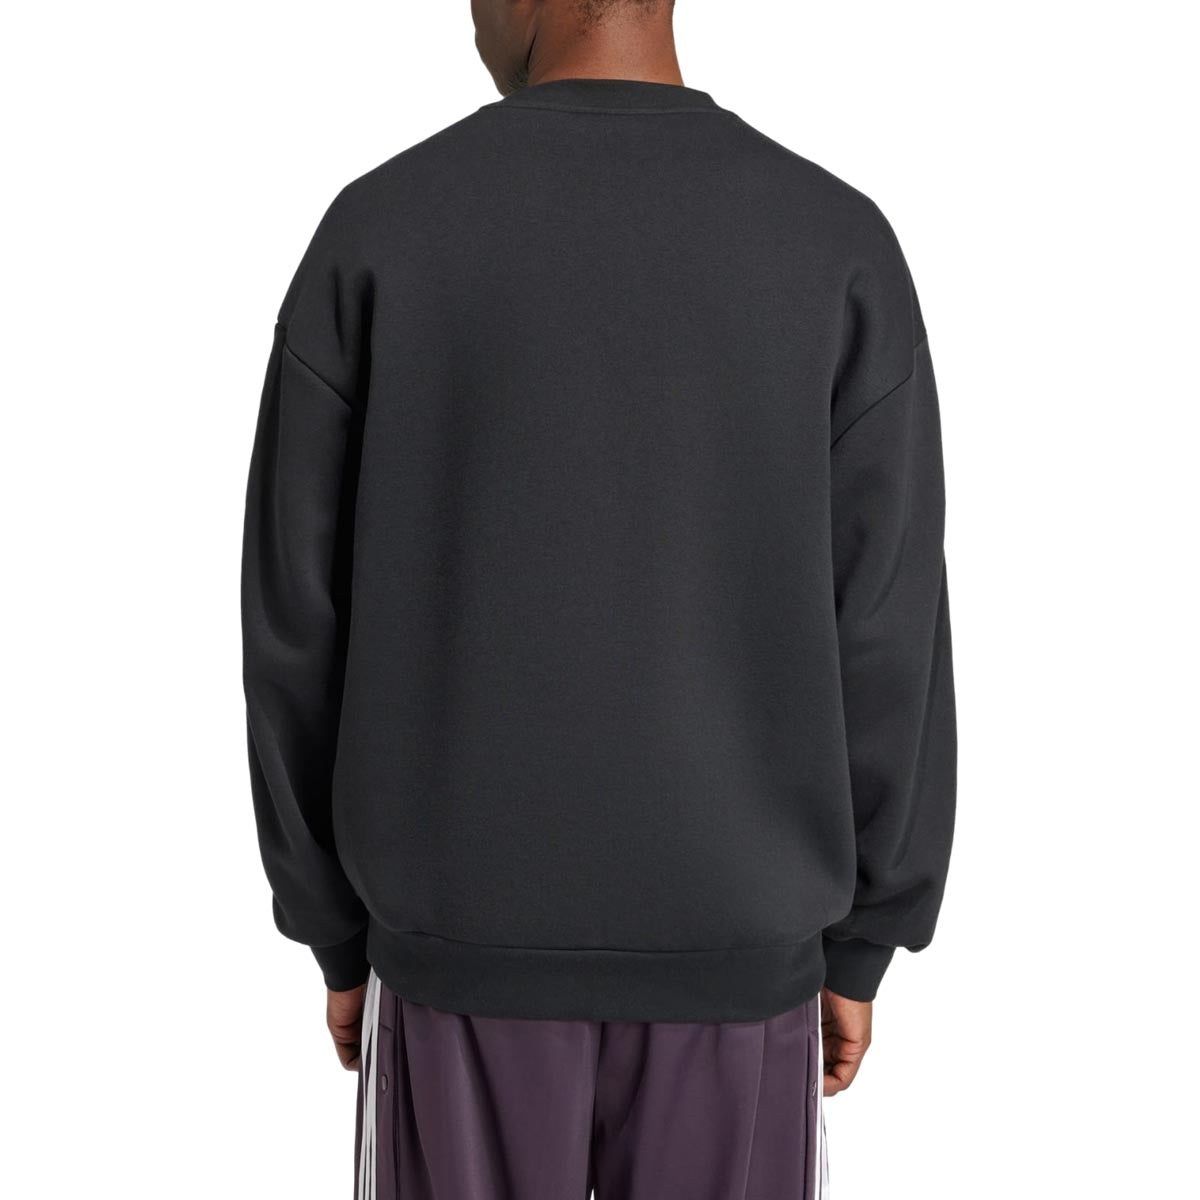 Adidas Originals Adicolor Oversized Crew Sweater - Black image 2